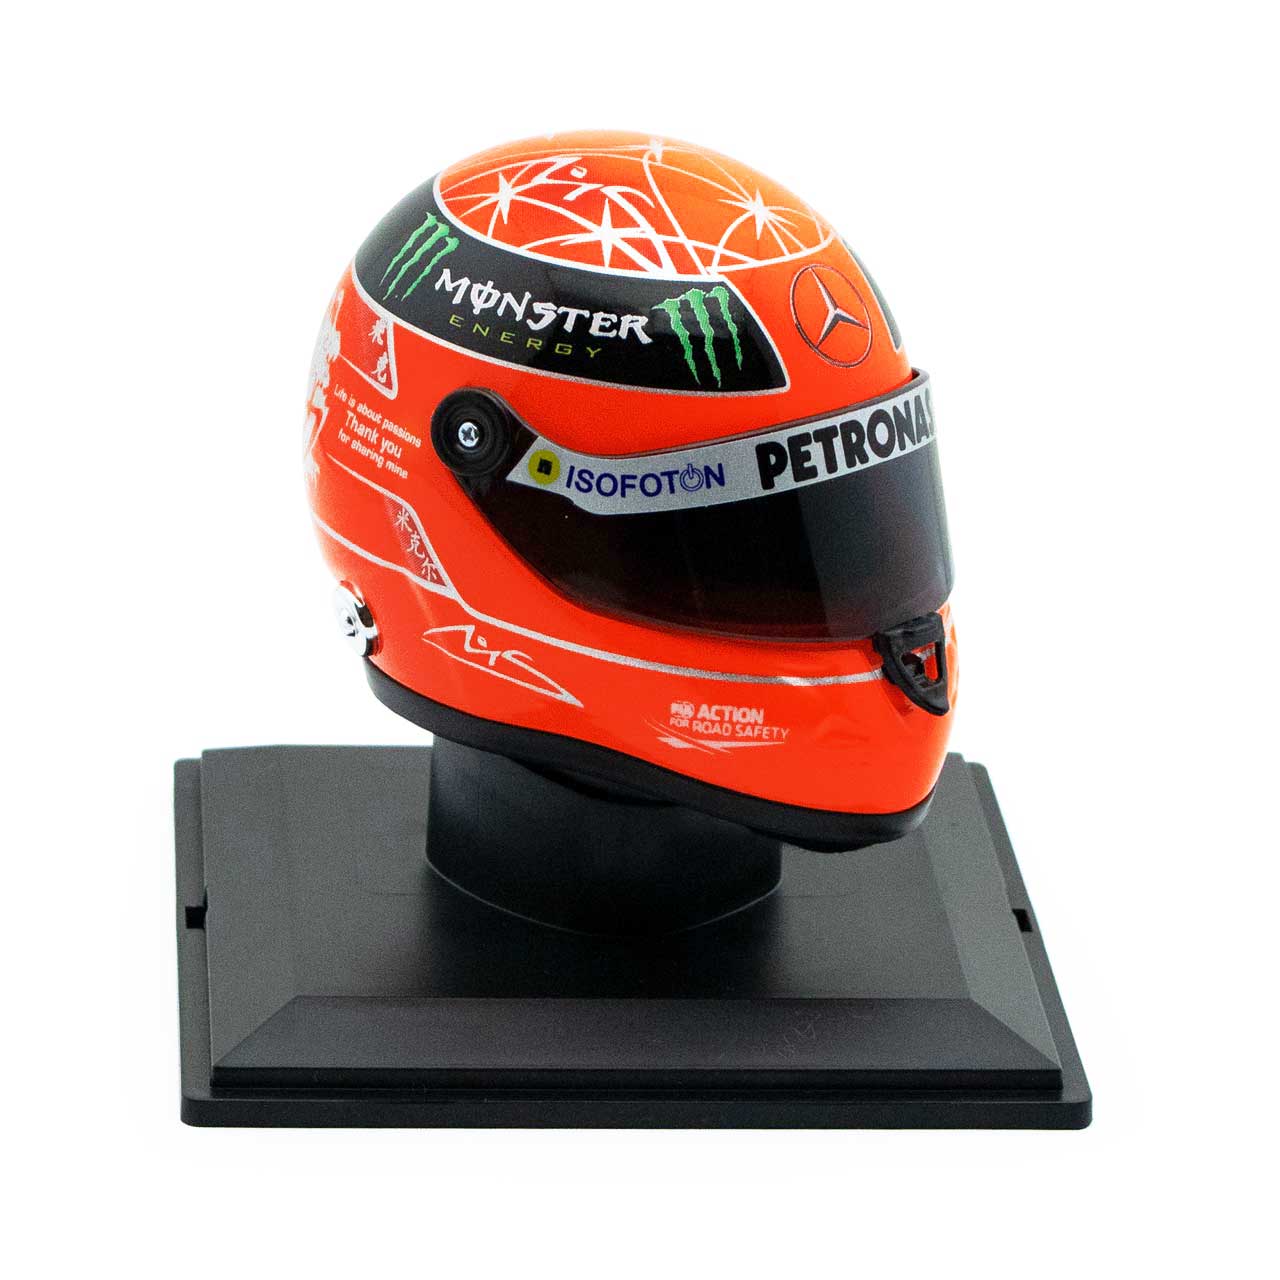 Michael Schumacher Final Helmet Gp Formula 1 2012 1:4 | eBay